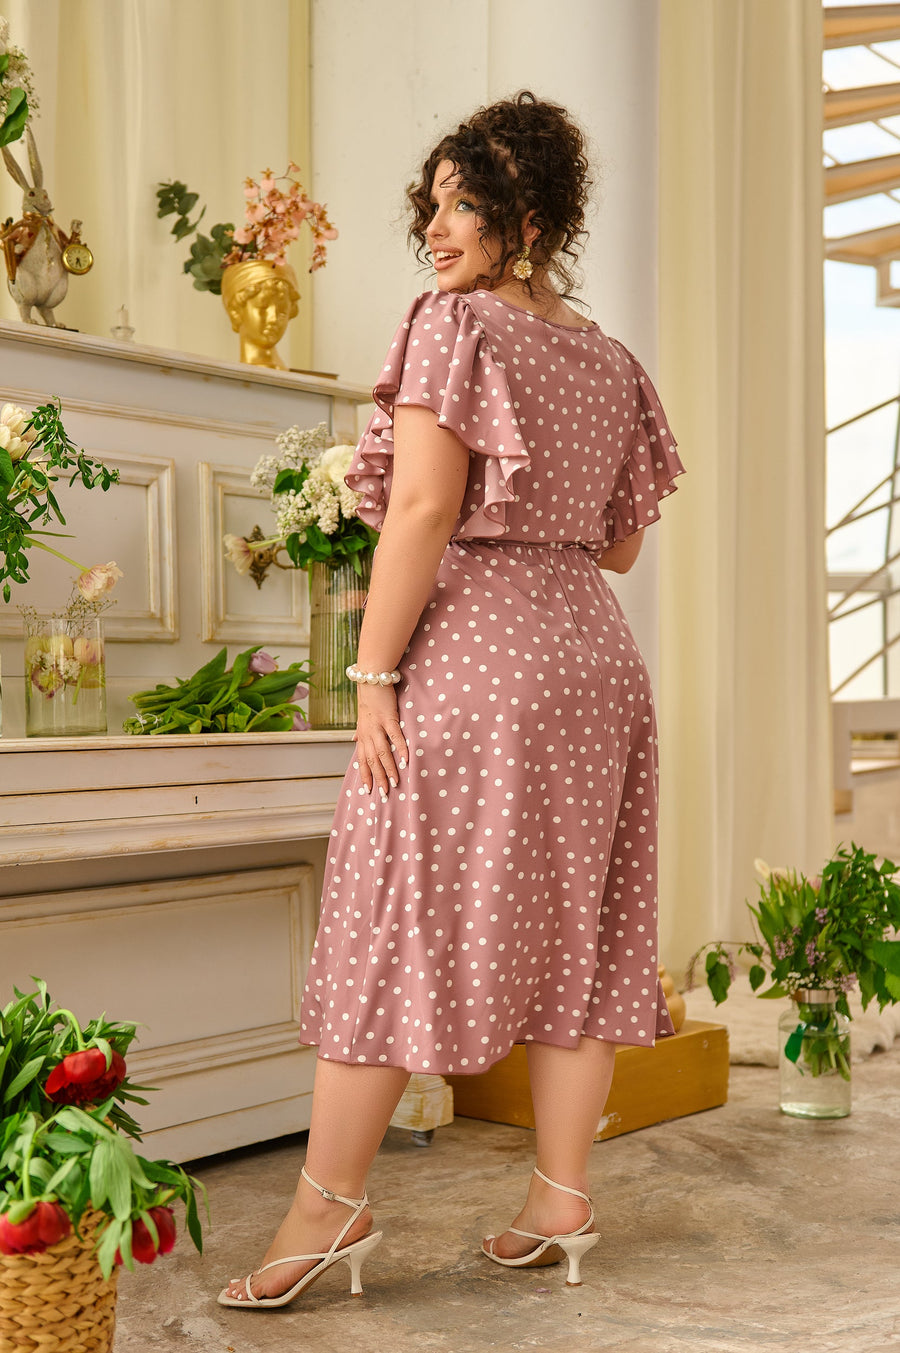 Polka dot knee-length dress